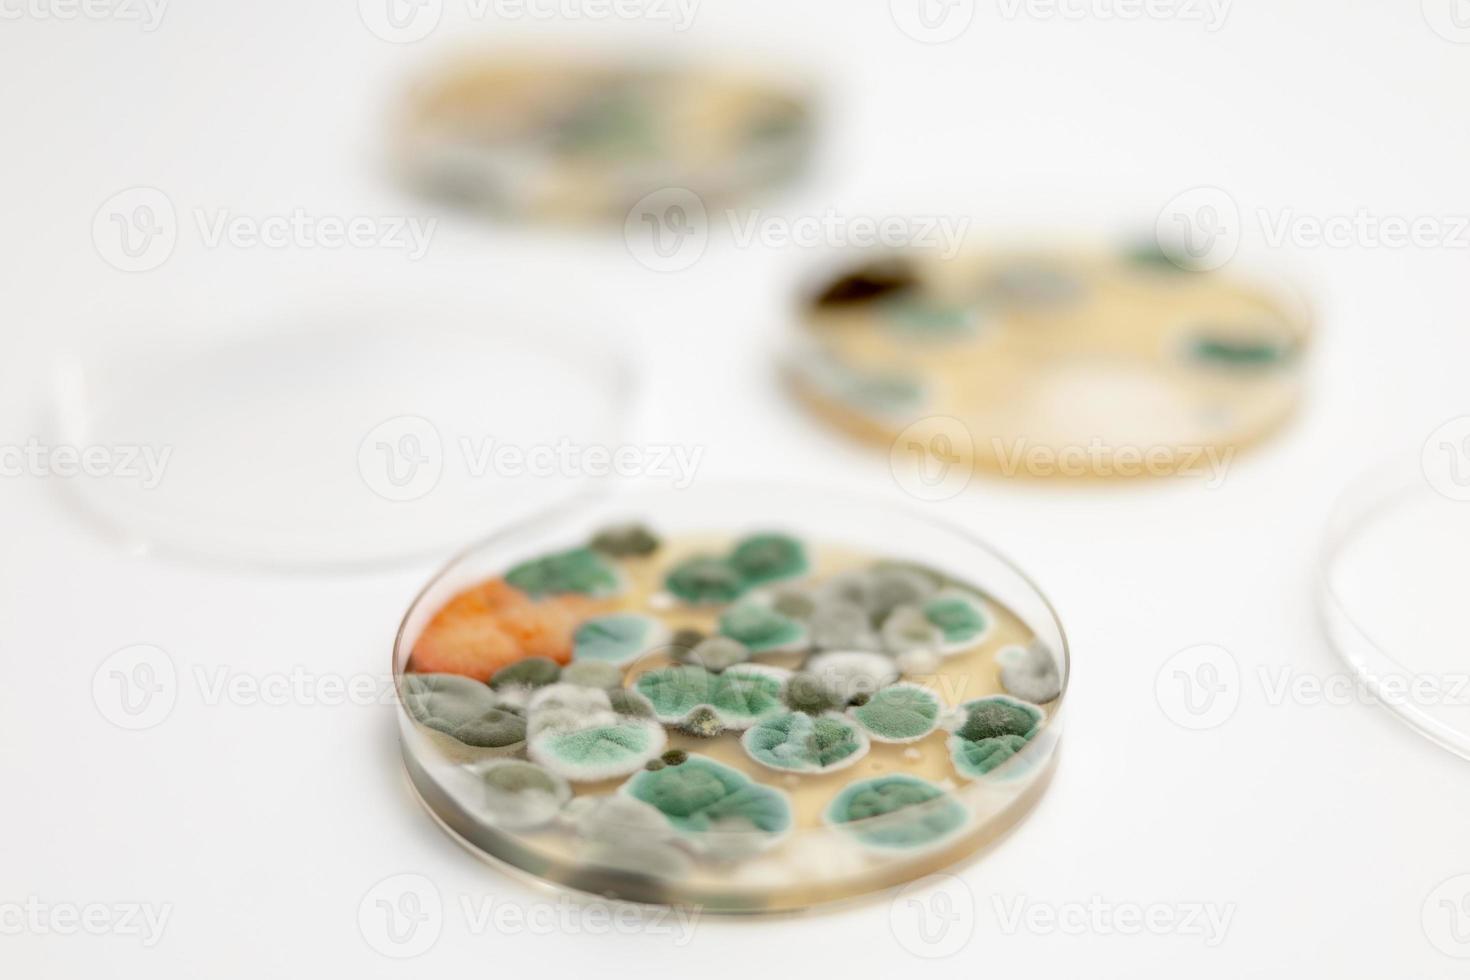 muestras de moho sobre fondo blanco. una placa de petri con colonias de microorganismos para análisis bacteriológico en un laboratorio microbiológico. vista de cerca del molde. foto